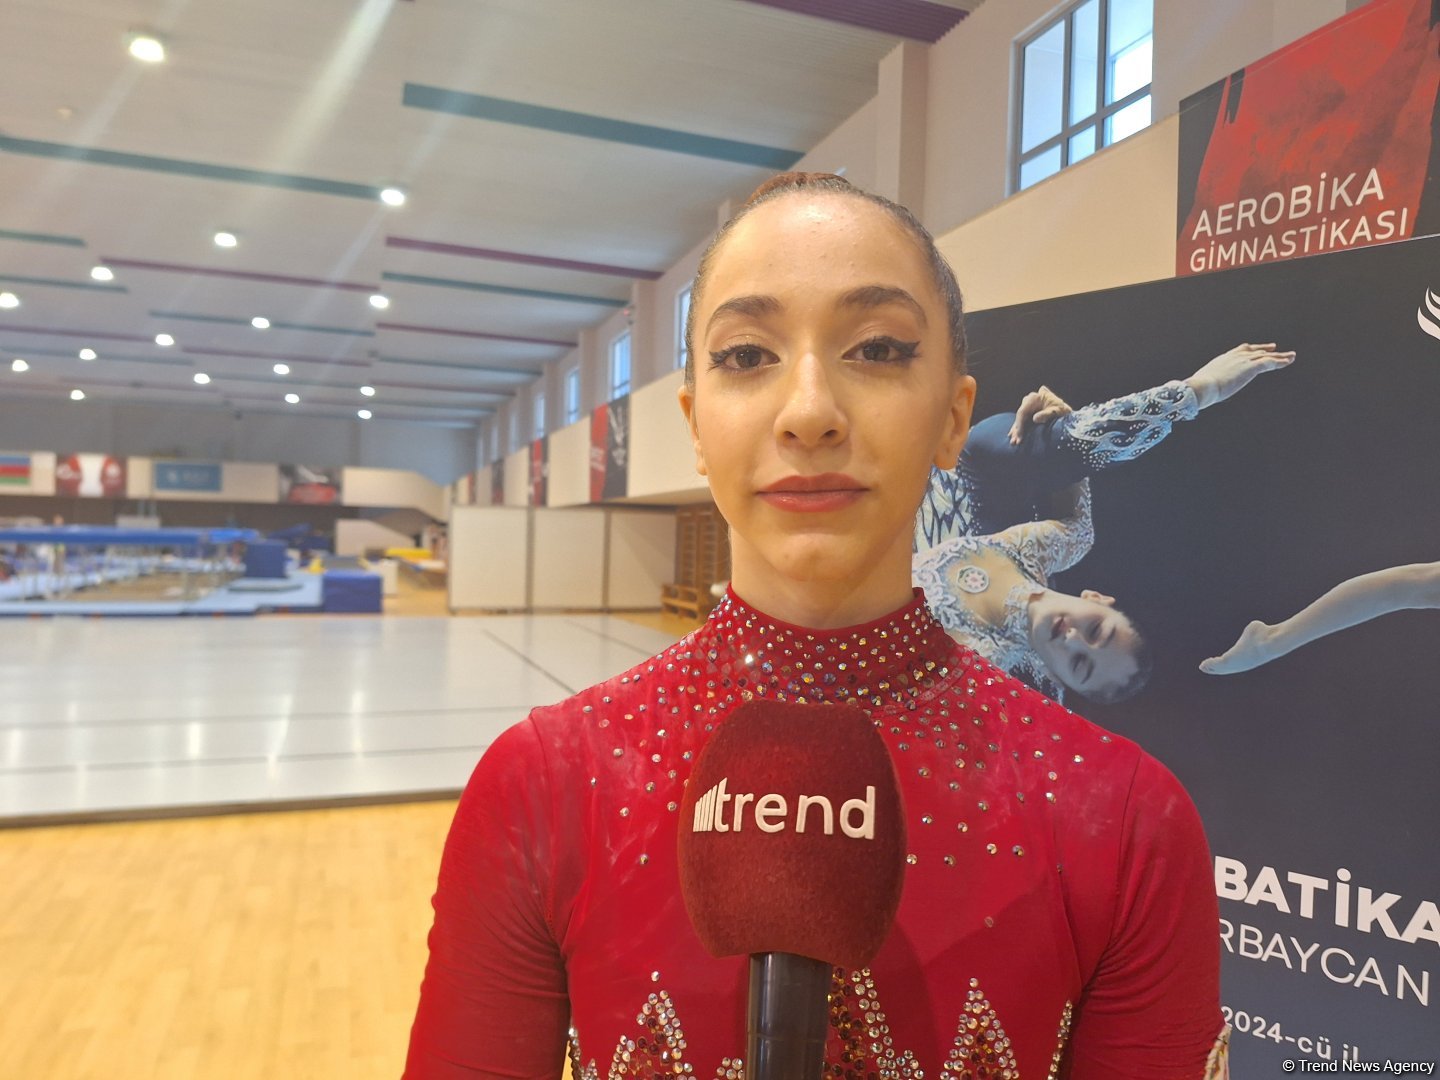 Программу на соревнованиях выполнила хорошо – азербайджанская гимнастка